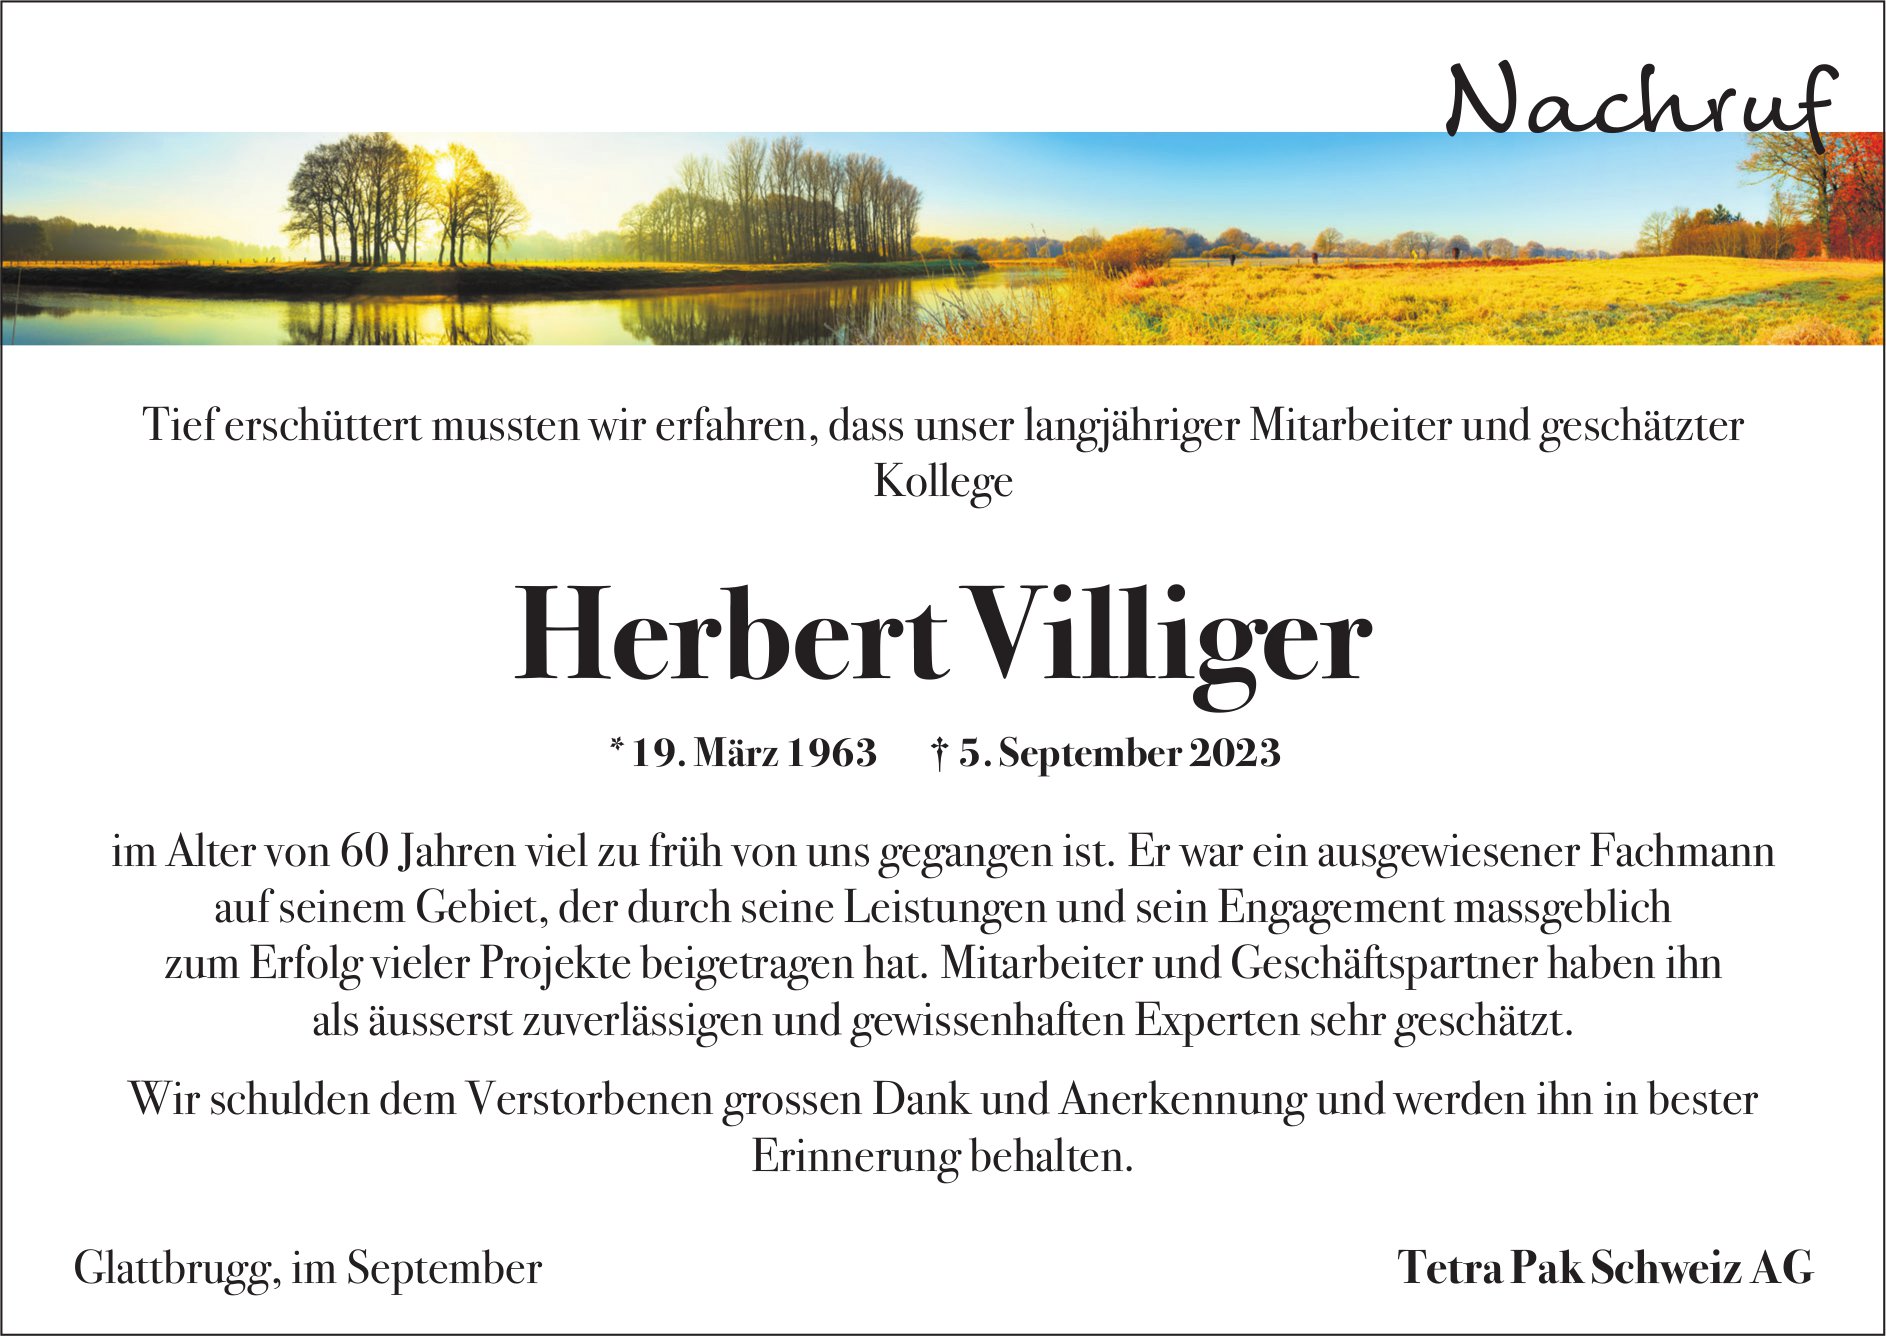 Villiger Herbert, September 2023 / TA